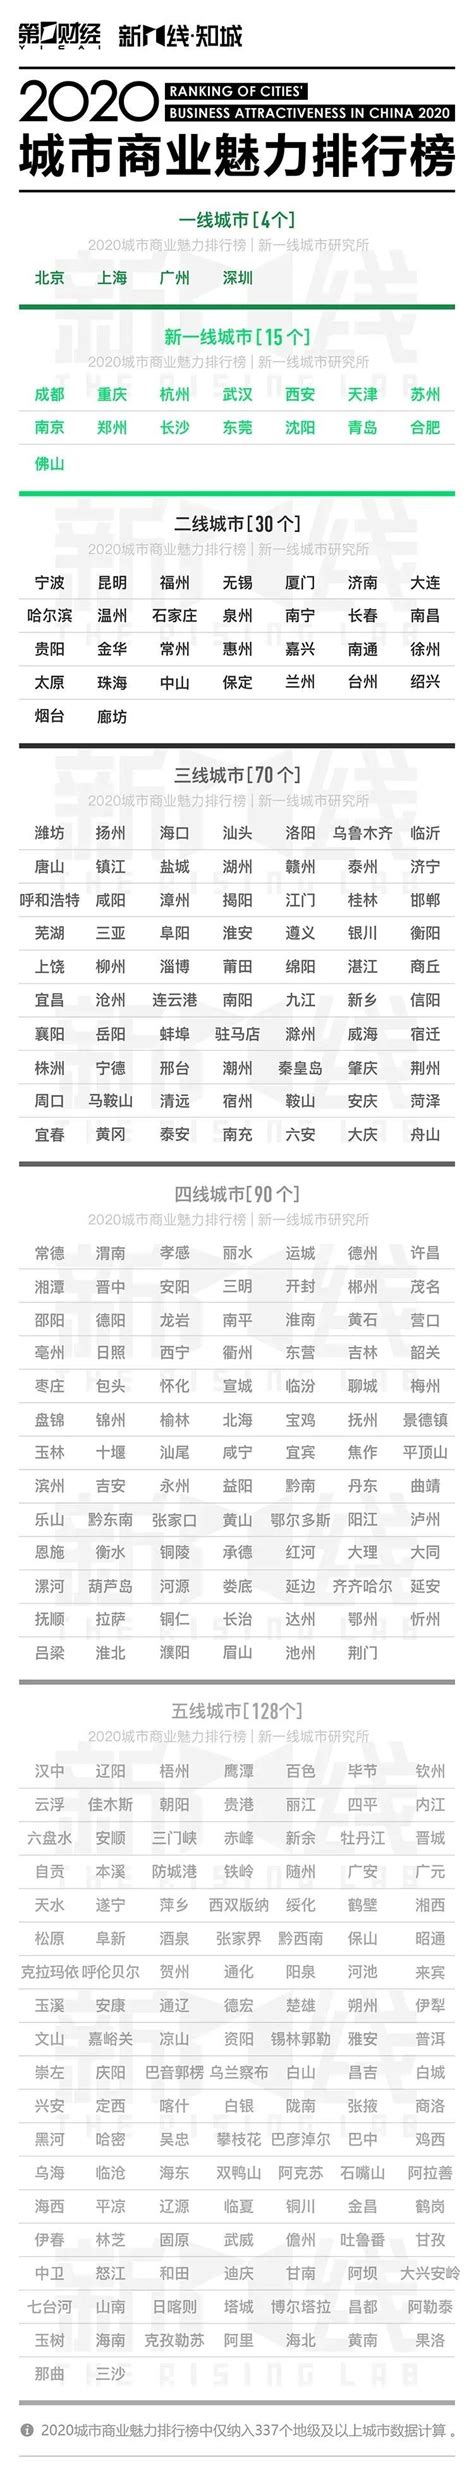 2017新一线城市名单出炉 2017中国新一线城市排名-搜狐